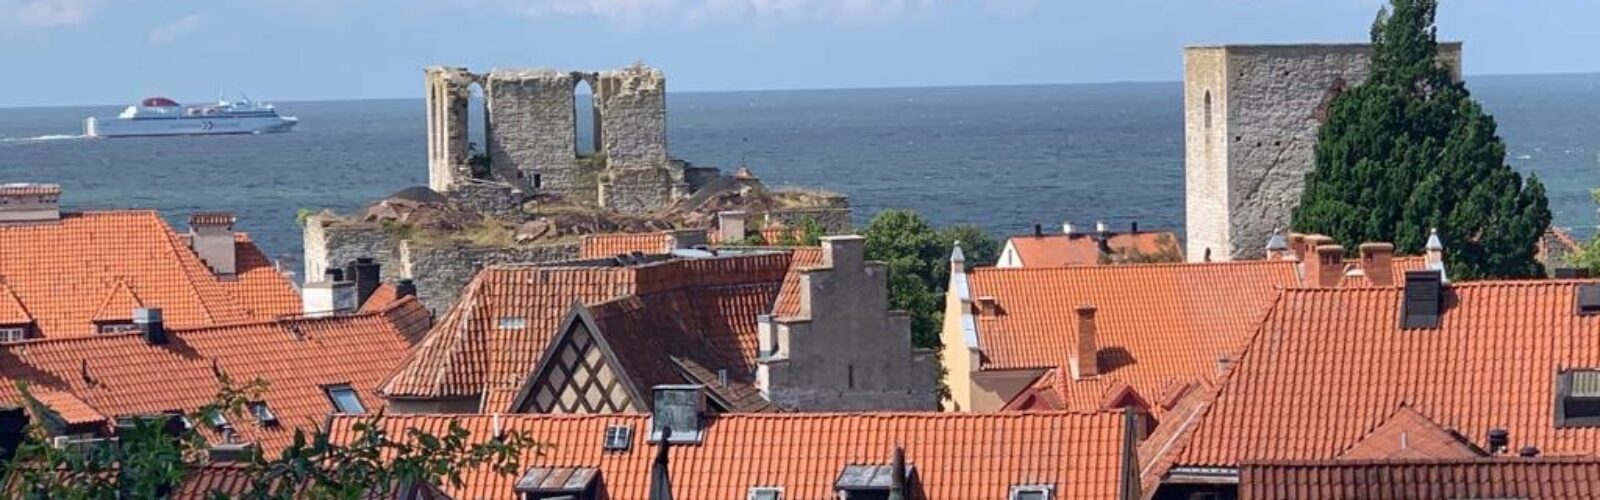 Blick über Visby mit ablegender Fähre